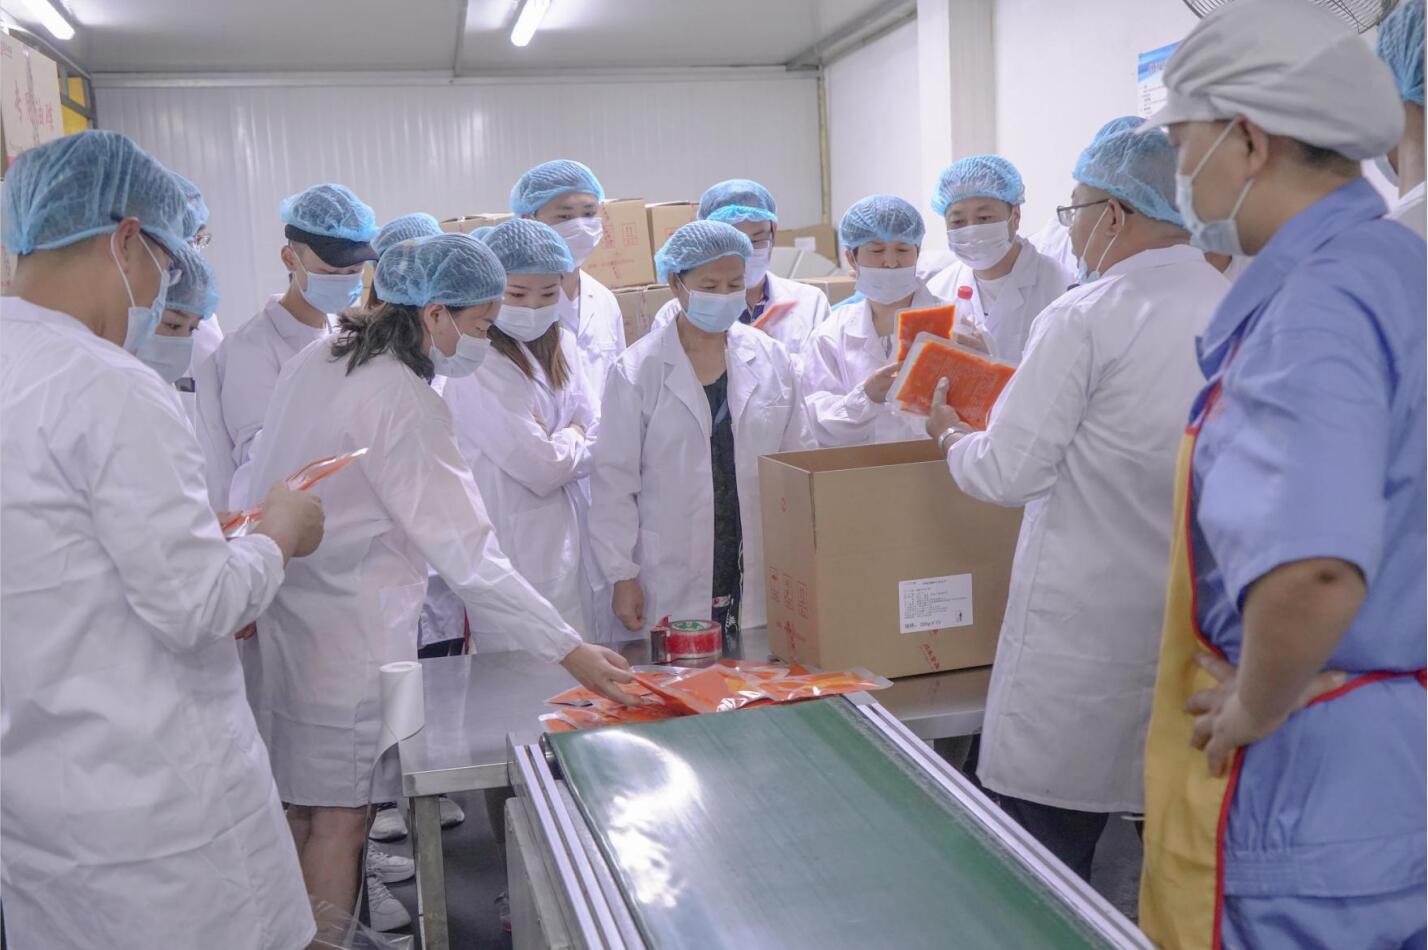 活动预告 丨 川禾食品厂第三期活动“总经理带你做参访”6月23日即将开始